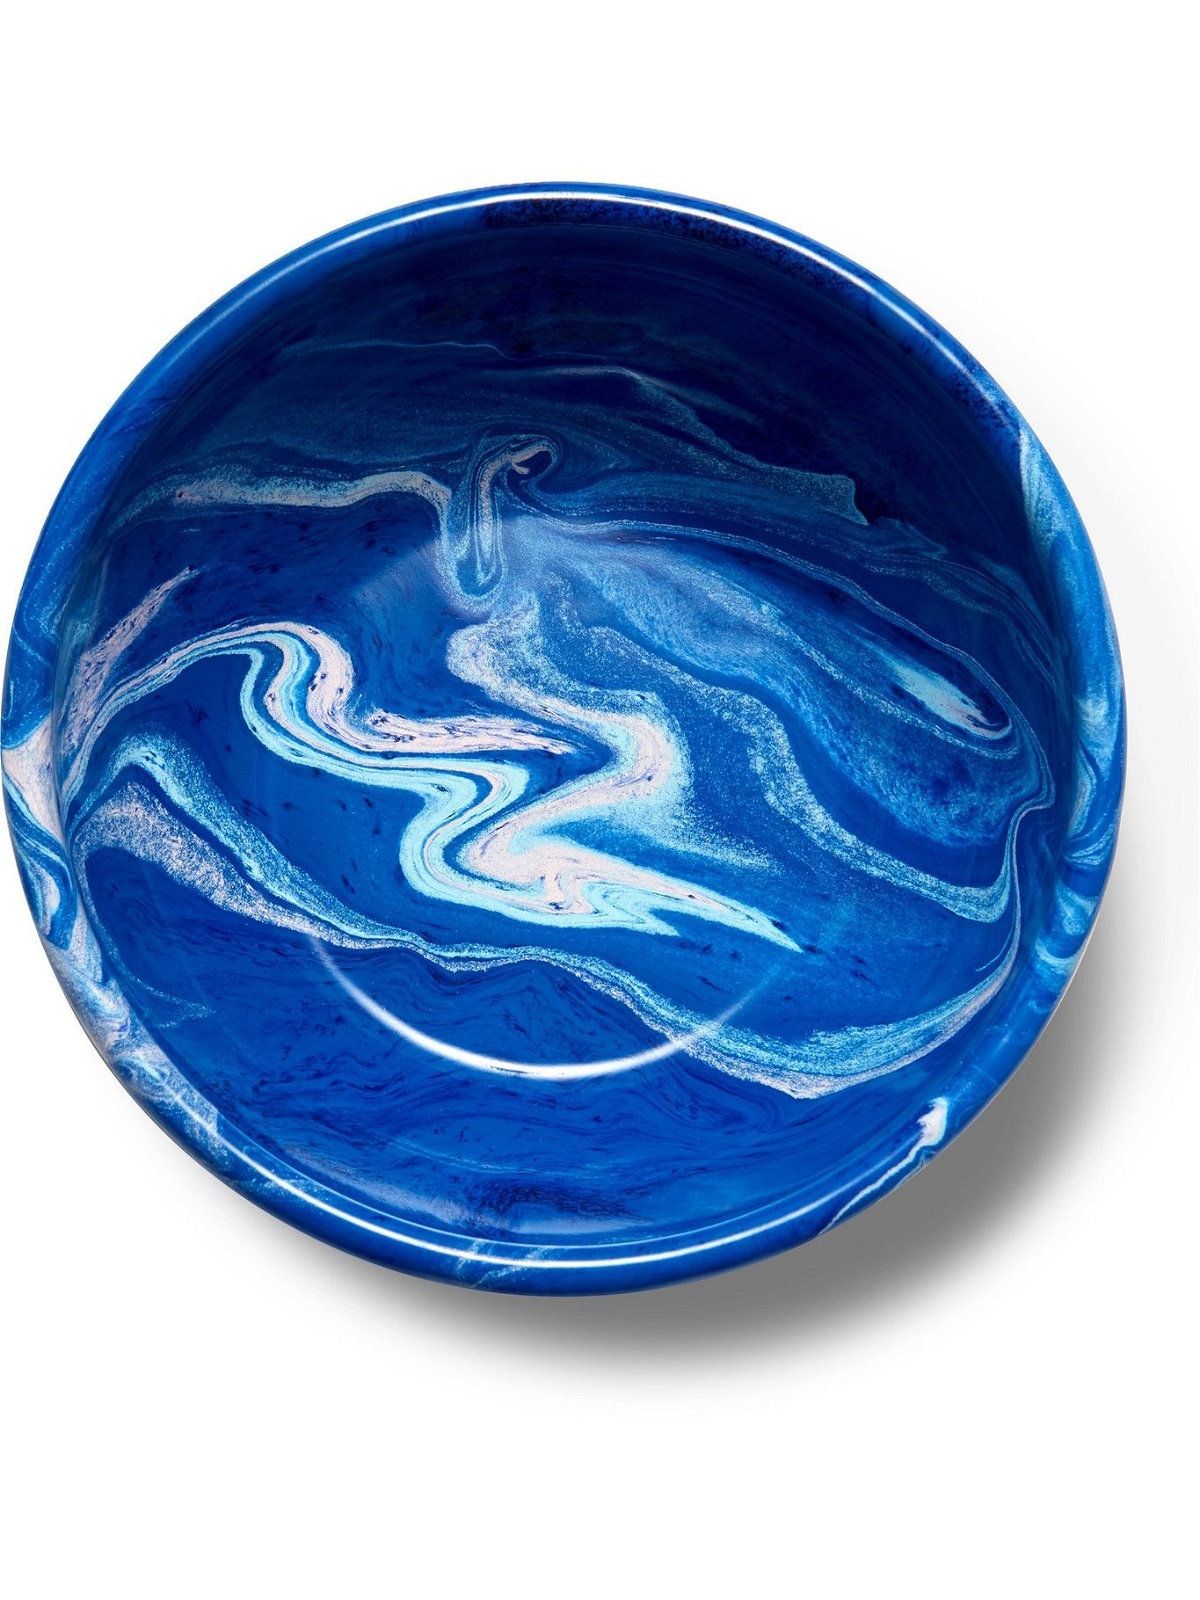 BORNN - Marbled Enamelware Bowl, 16cm